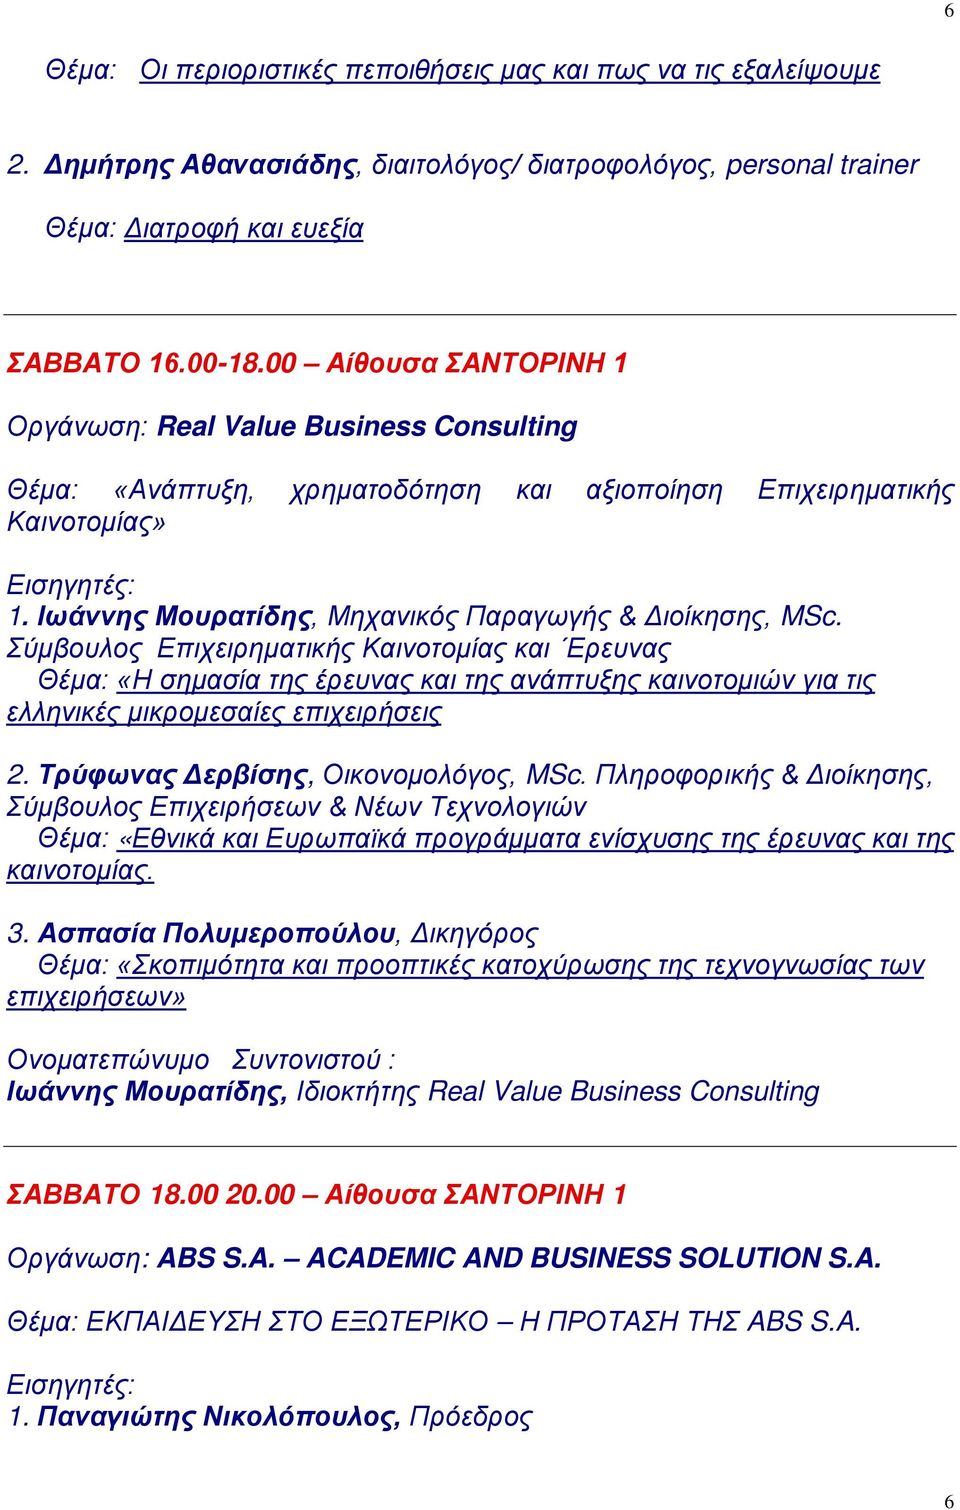 Σύμβουλος Επιχειρηματικής Καινοτομίας και Ερευνας Θέμα: «Η σημασία της έρευνας και της ανάπτυξης καινοτομιών για τις ελληνικές μικρομεσαίες επιχειρήσεις 2. Τρύφωνας Δερβίσης, Οικονομολόγος, MSc.